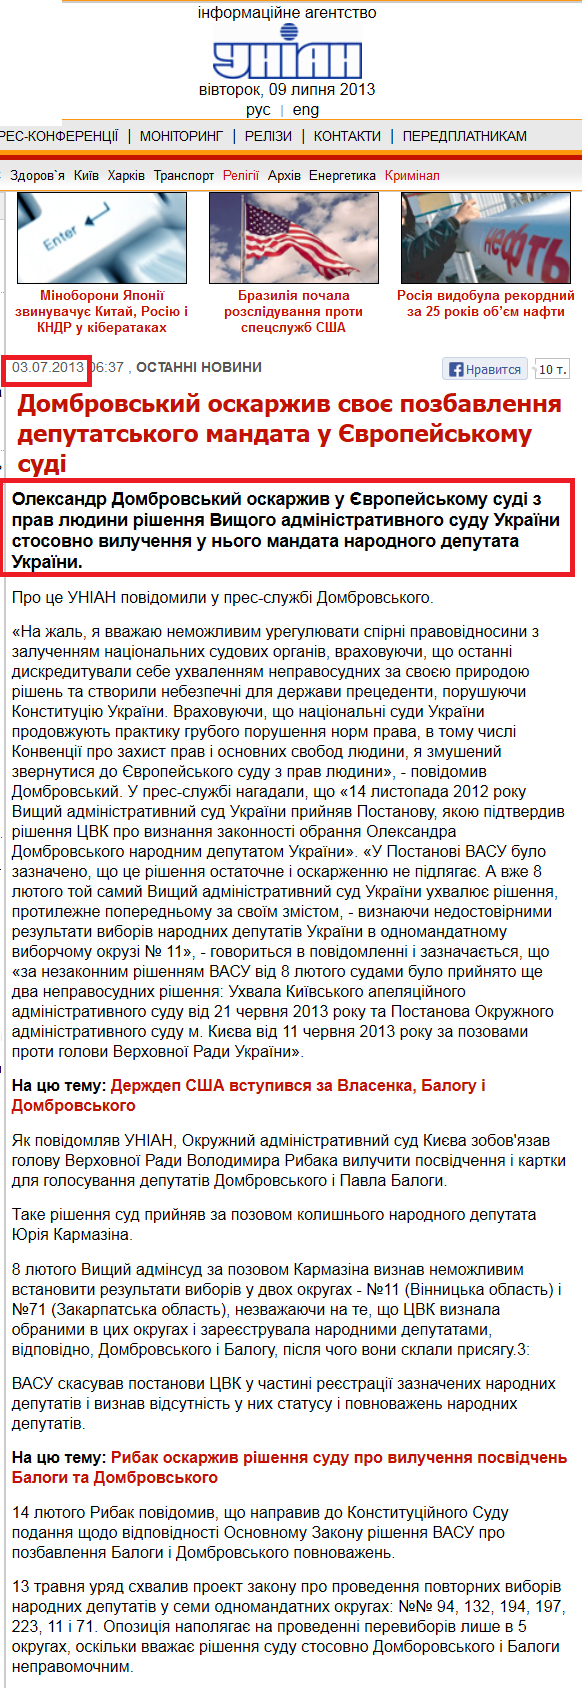 http://www.unian.ua/news/581007-dombrovskiy-oskarjiv-svoe-pozbavlennya-deputatskogo-mandata-u-evropeyskomu-sudi.html